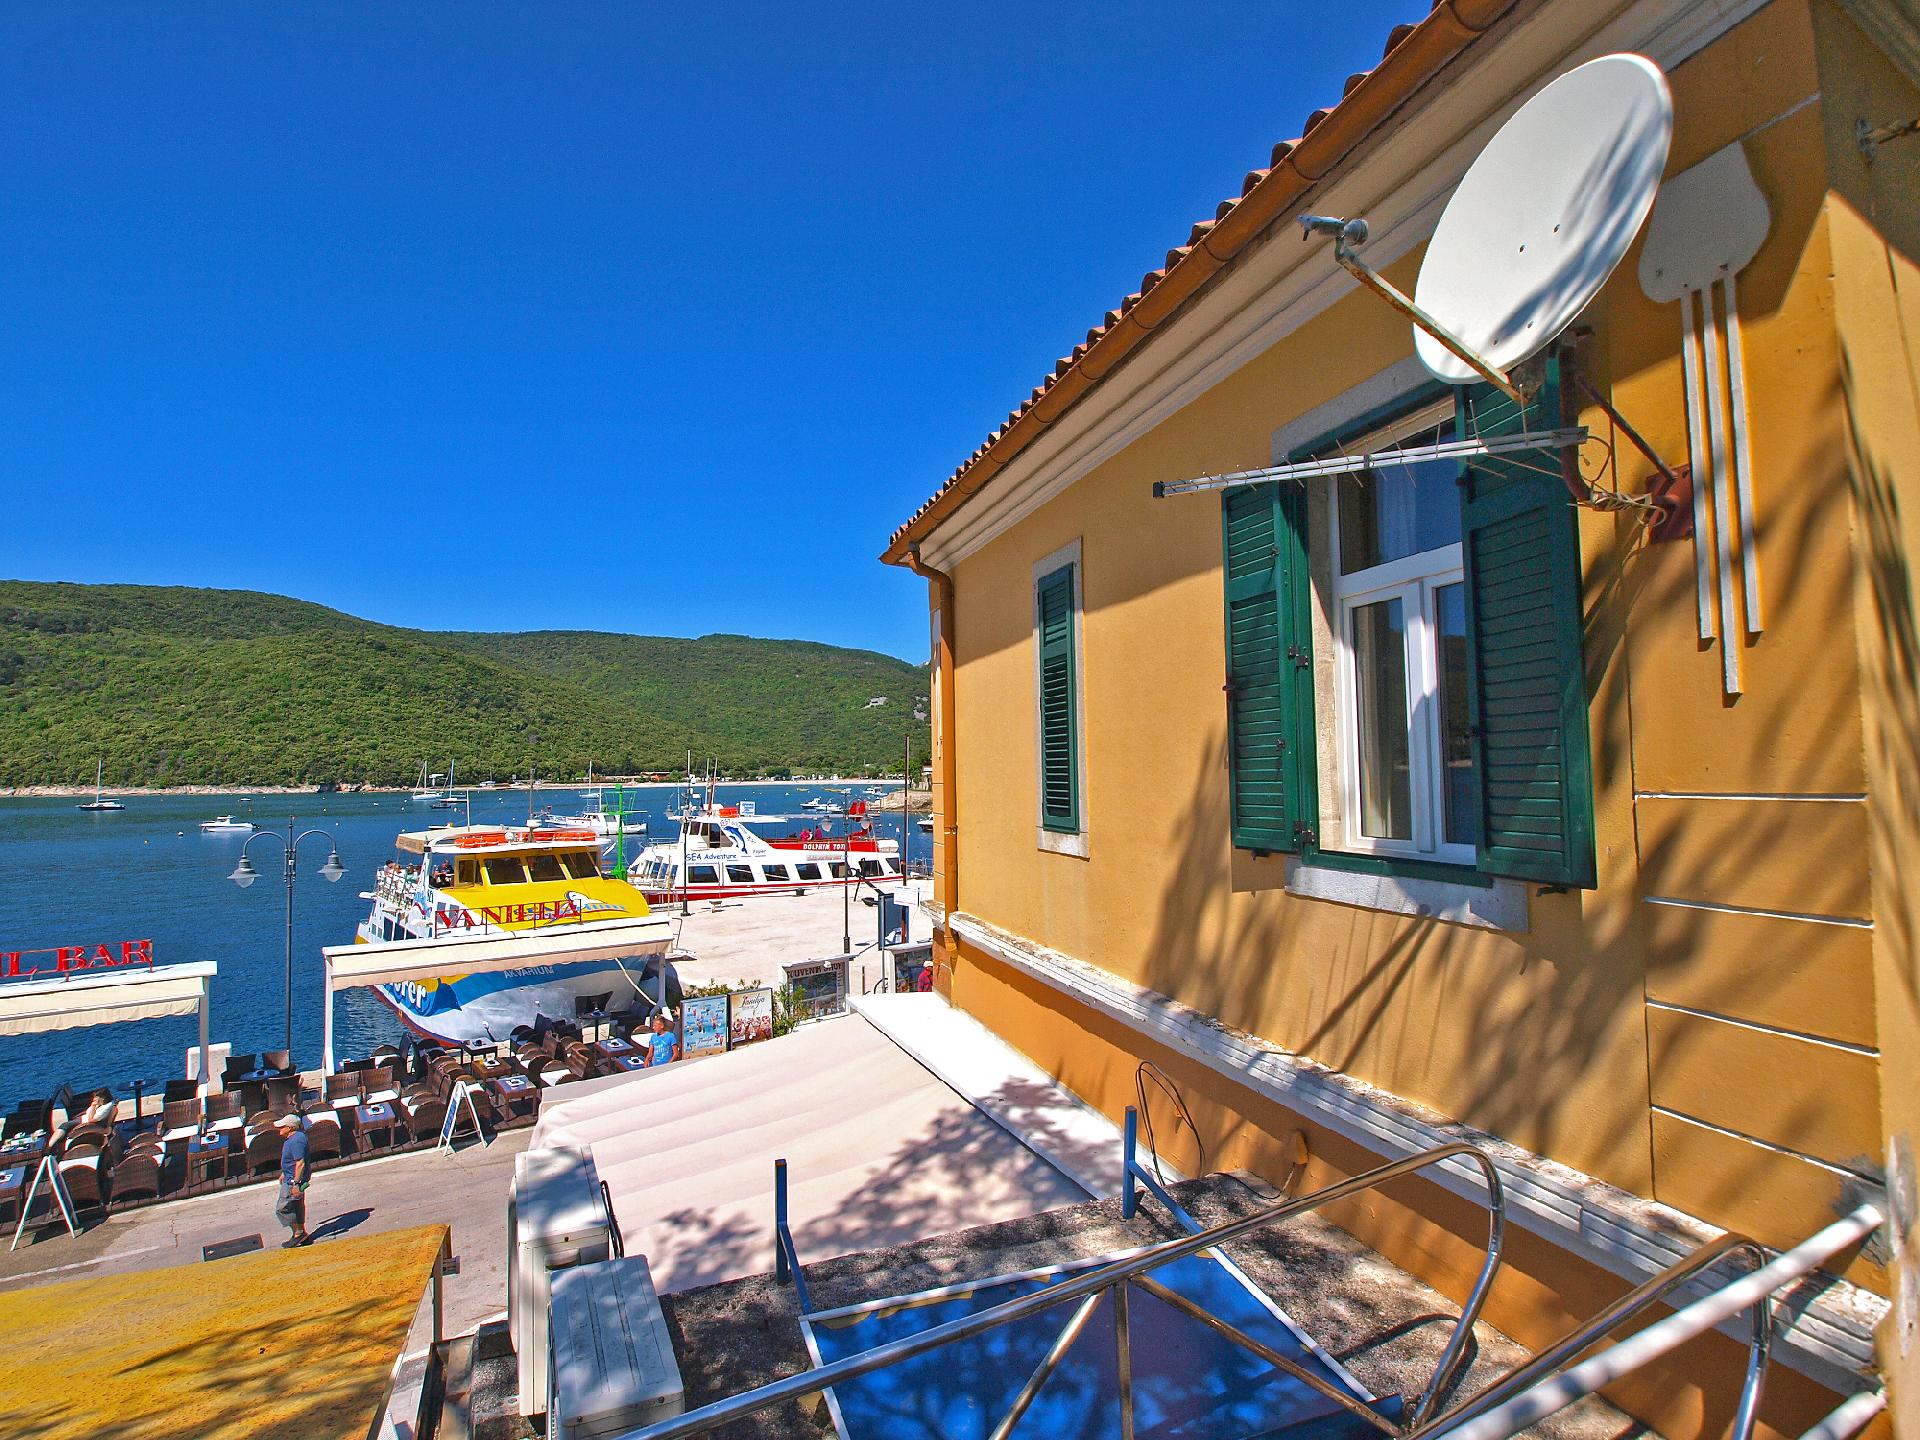 Ferienwohnung für 4 Personen ca. 60 m² i  in Kroatien